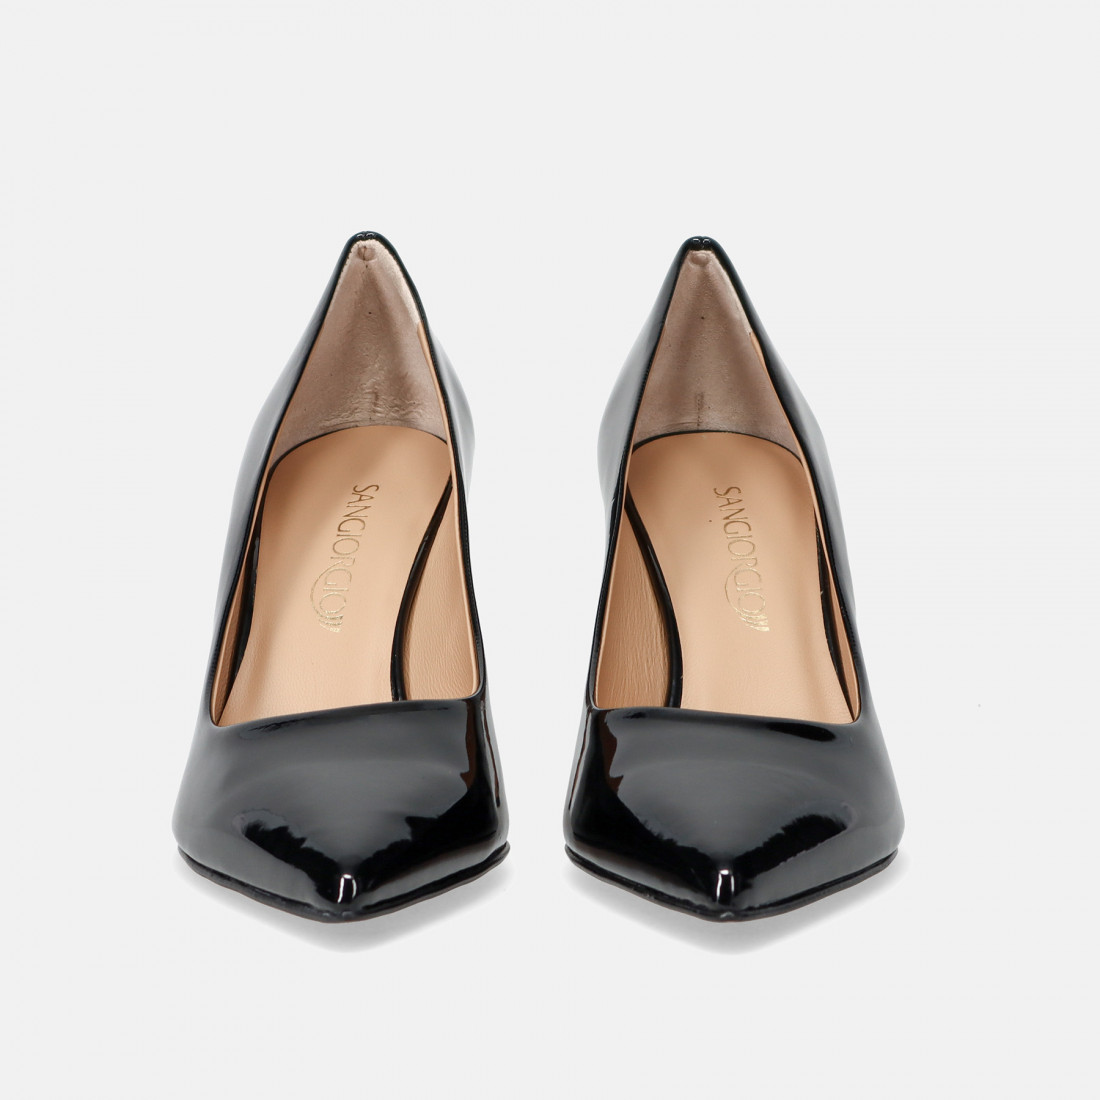 Sangiorgio black pump in patent leather with medium heel